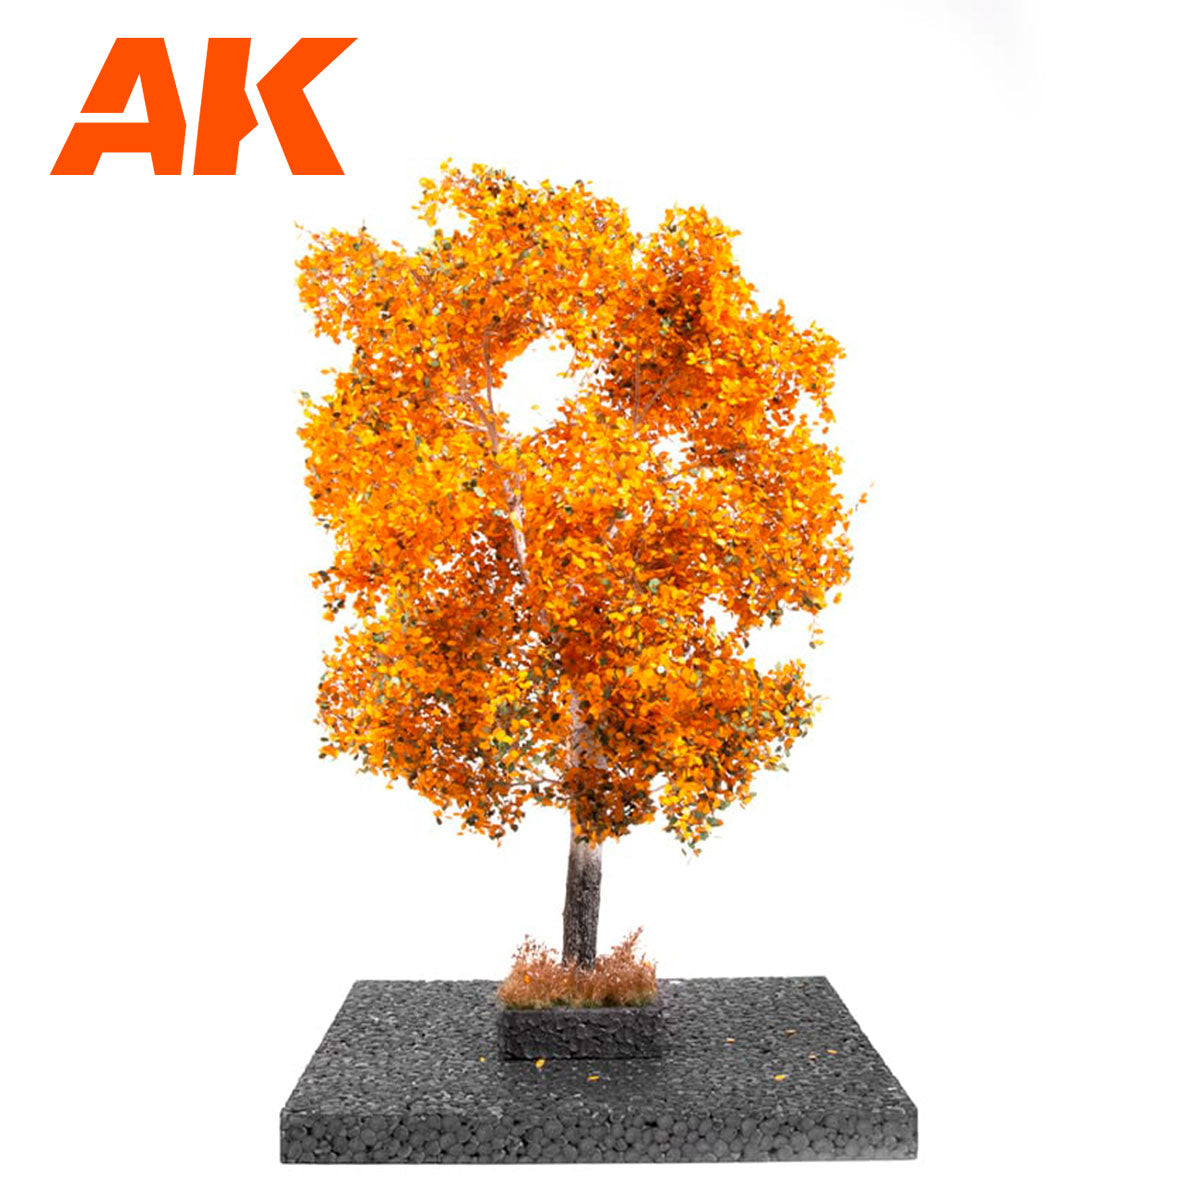 AK8195 - White Poplar Autumn Tree 1:35 and 1:32